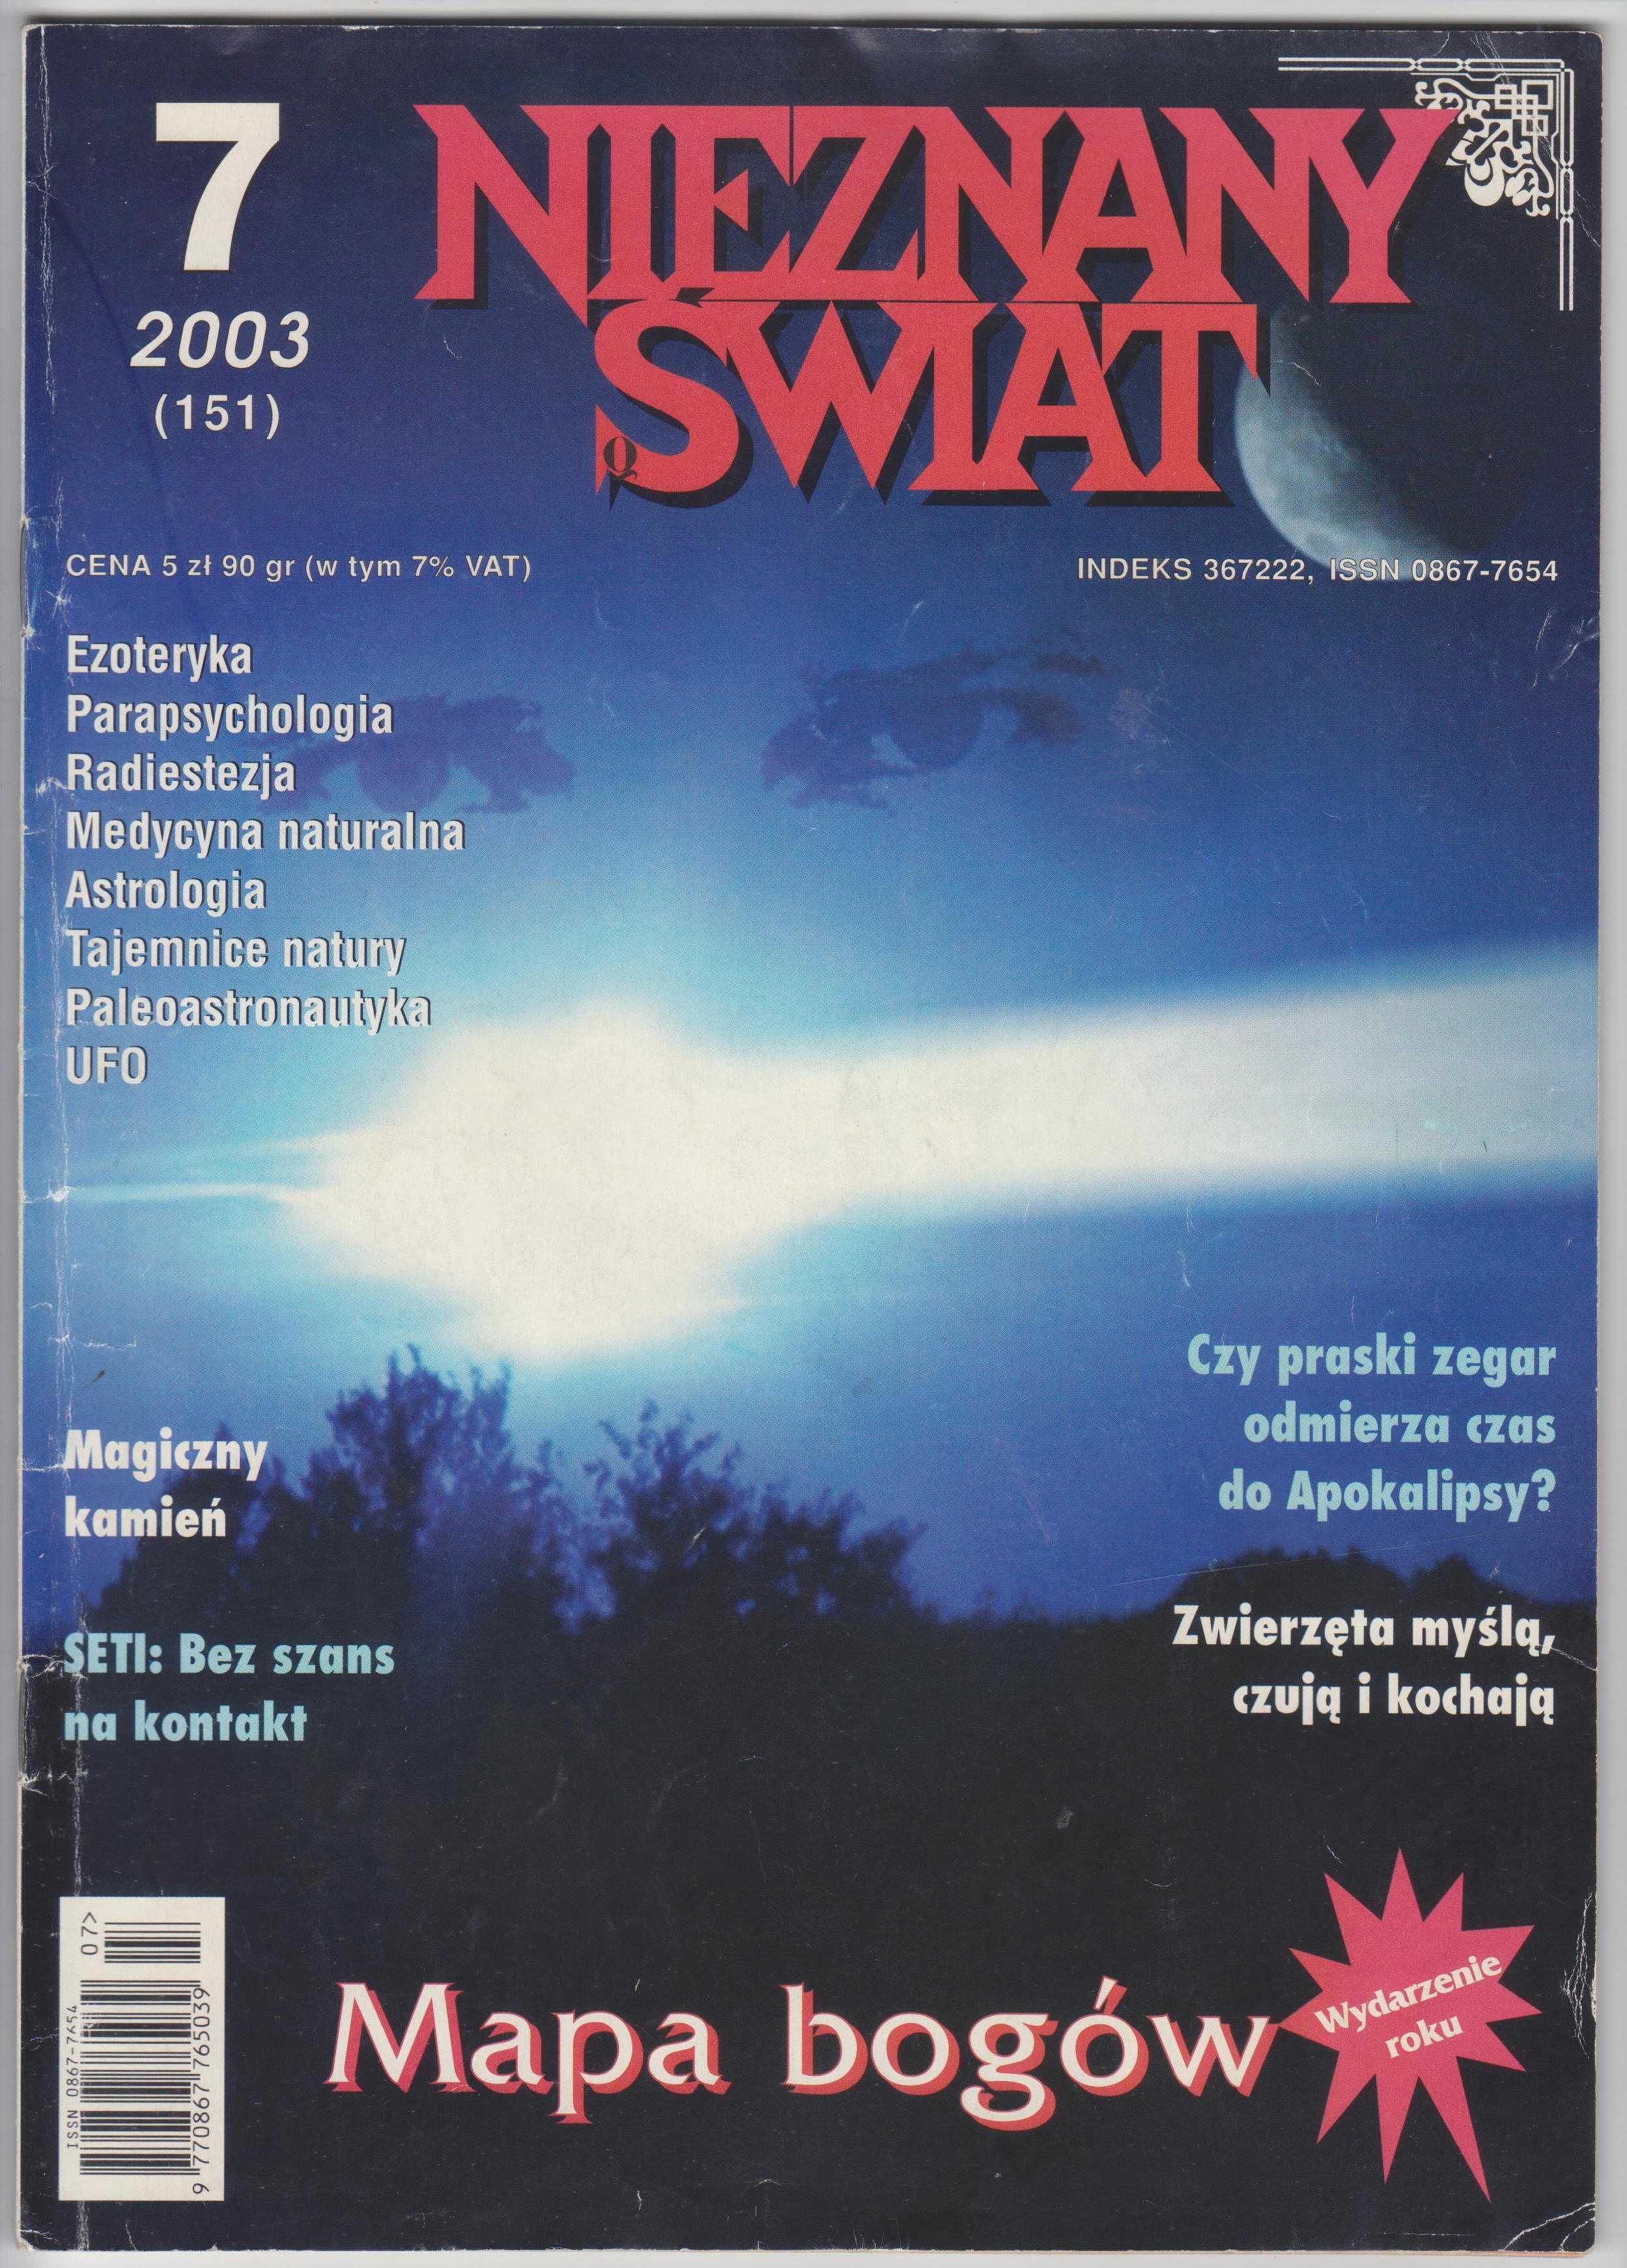 Miesięcznik Nieznany świat 7/2003